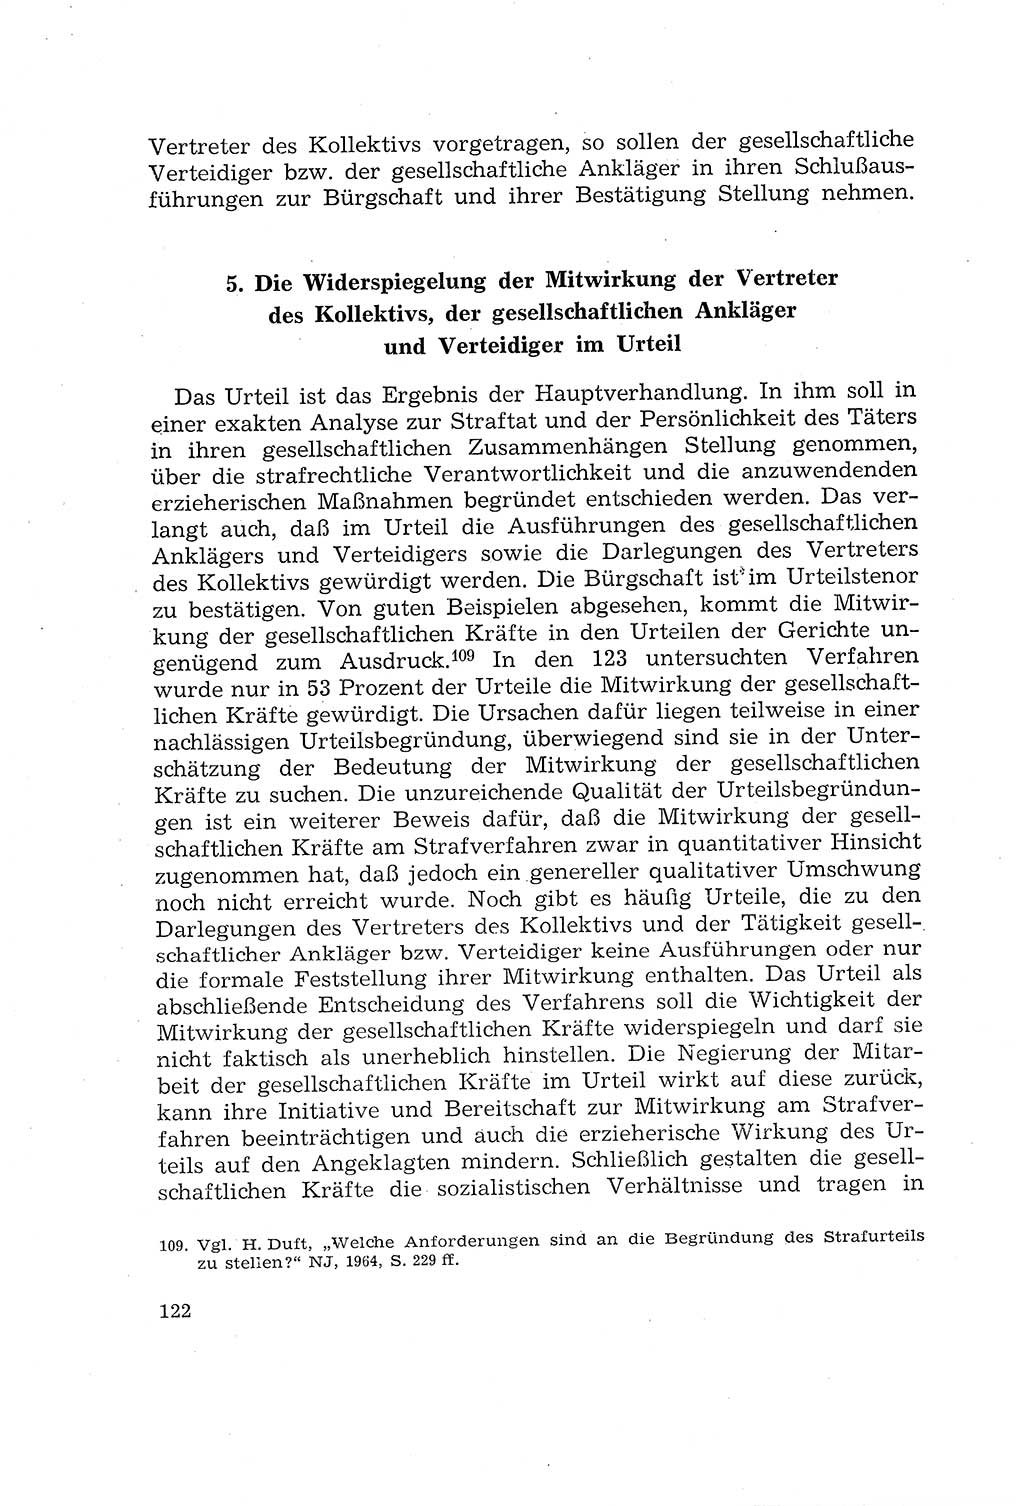 Die Mitwirkung der Werktätigen am Strafverfahren [Deutsche Demokratische Republik (DDR)] 1966, Seite 122 (Mitw. Str.-Verf. DDR 1966, S. 122)